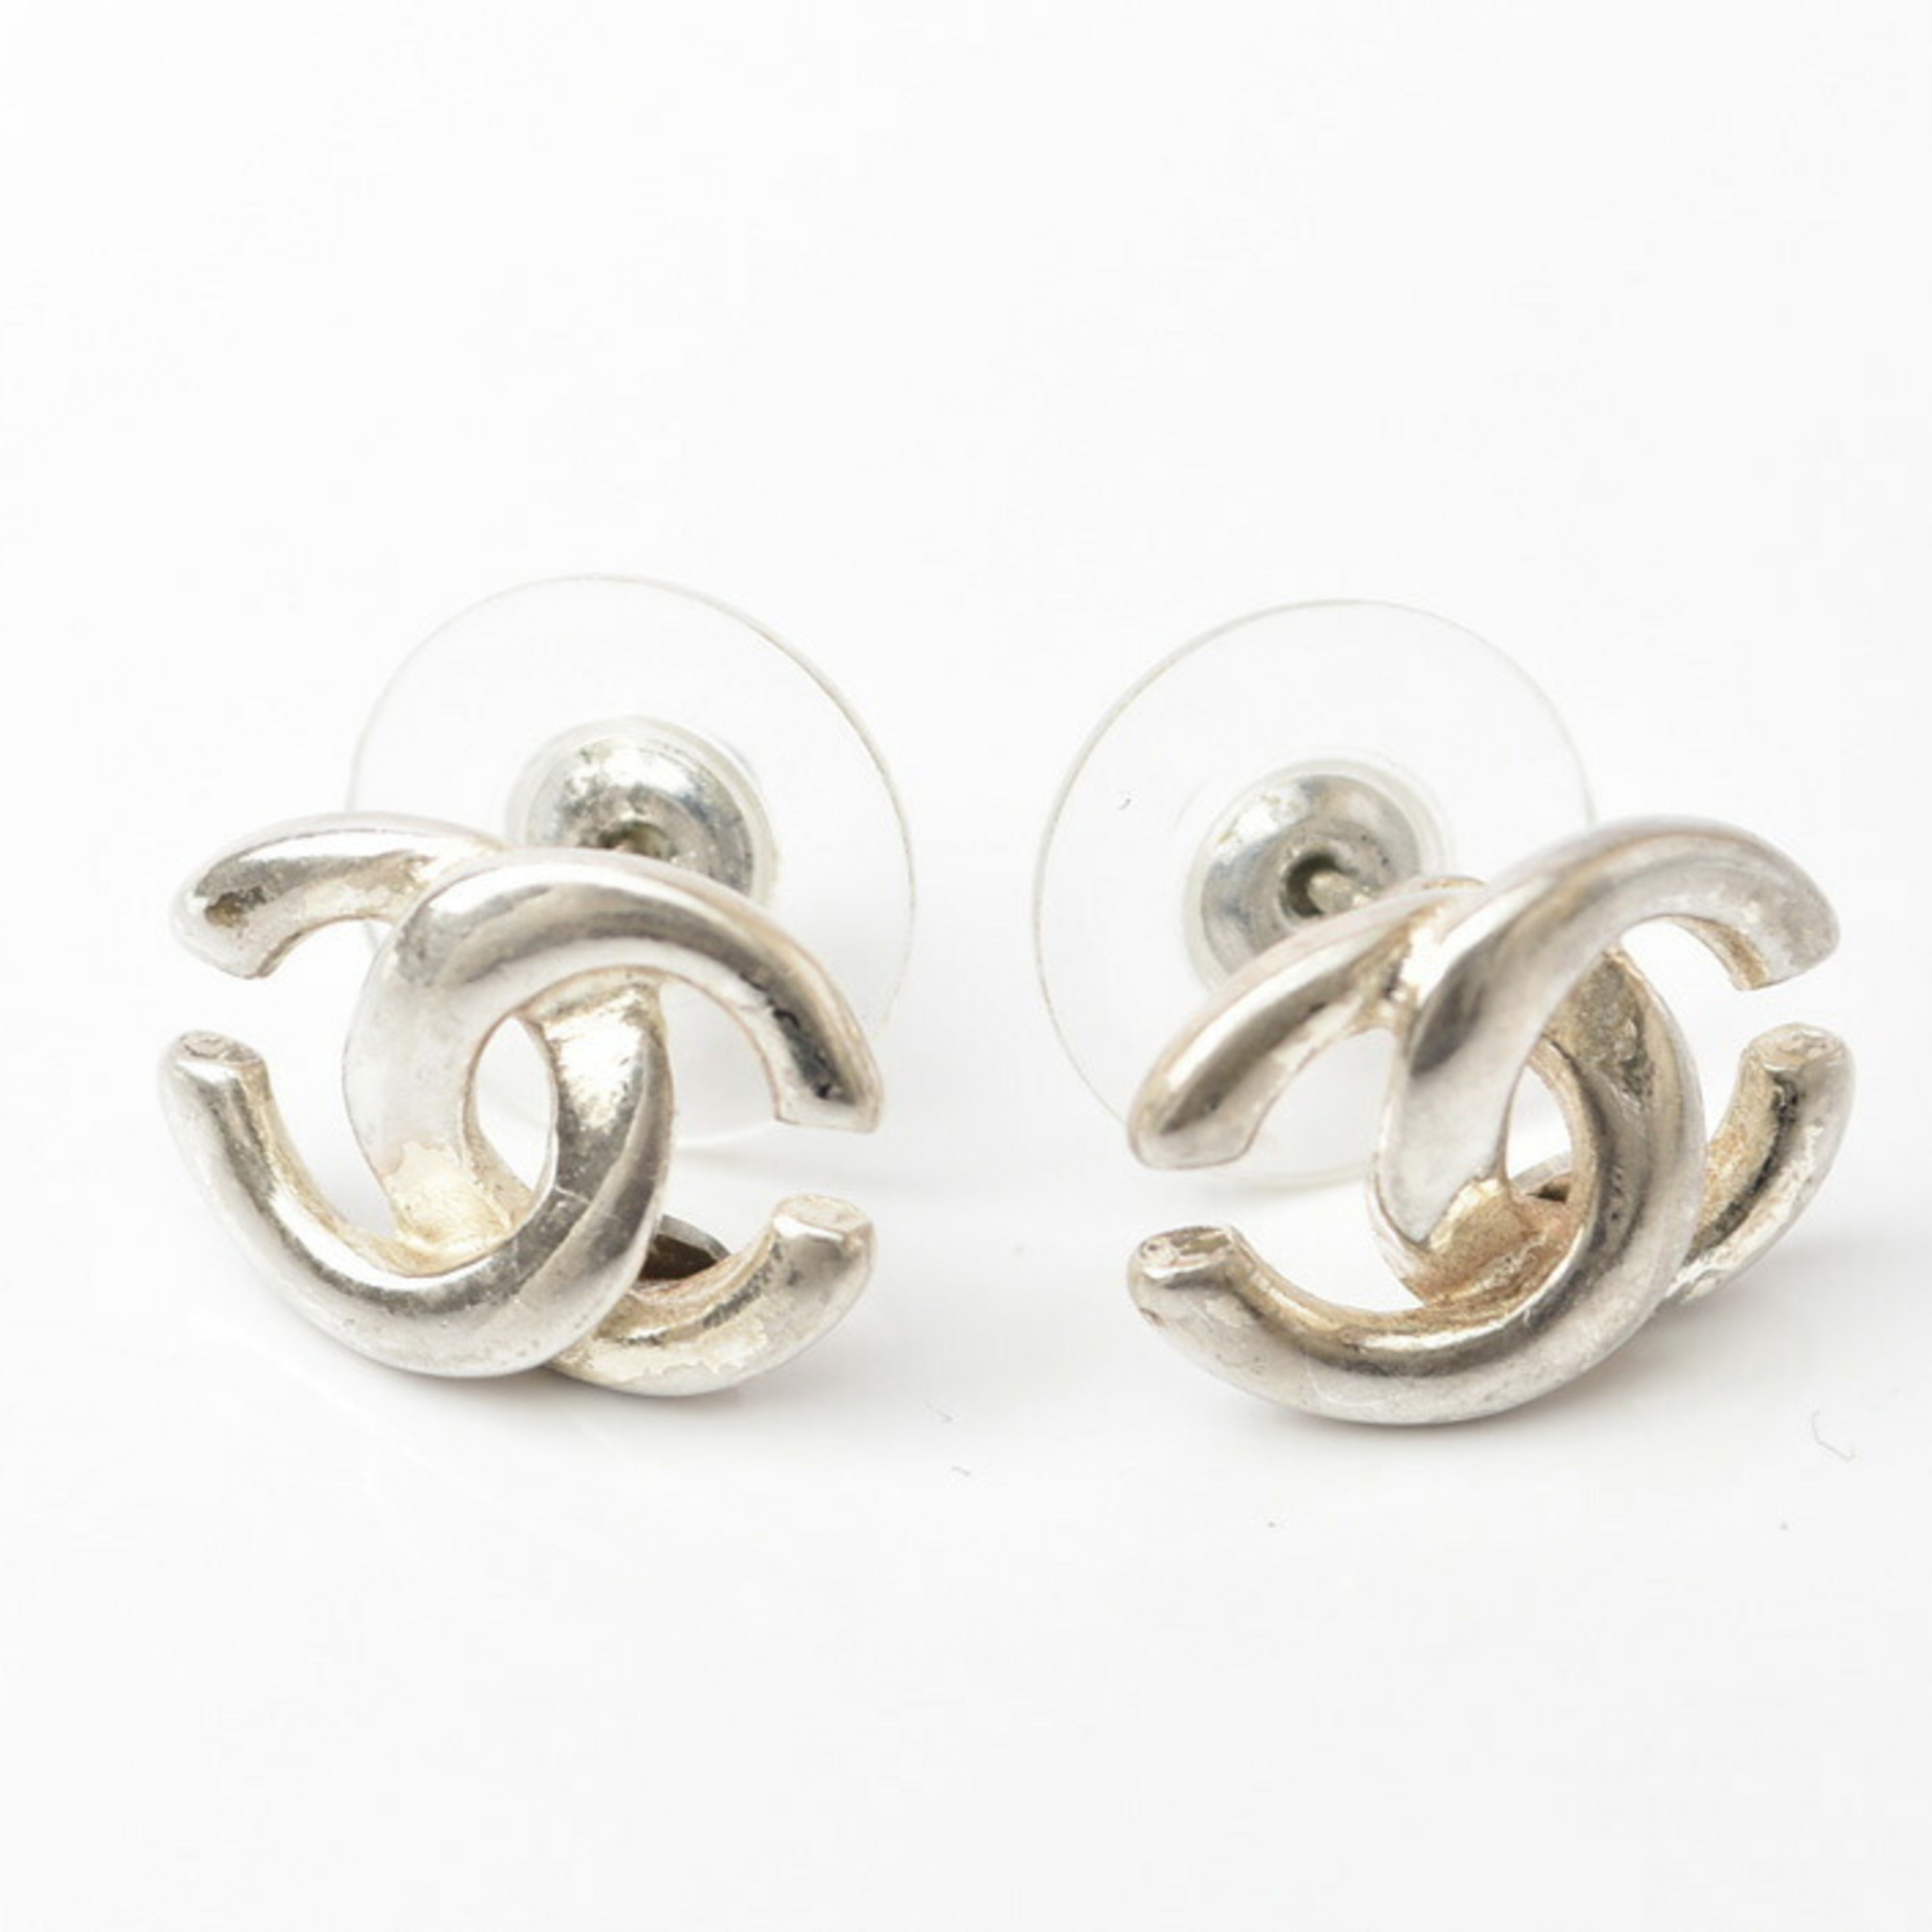 Chanel 2405c9-ch Metal Ball Stud Earrings Silver